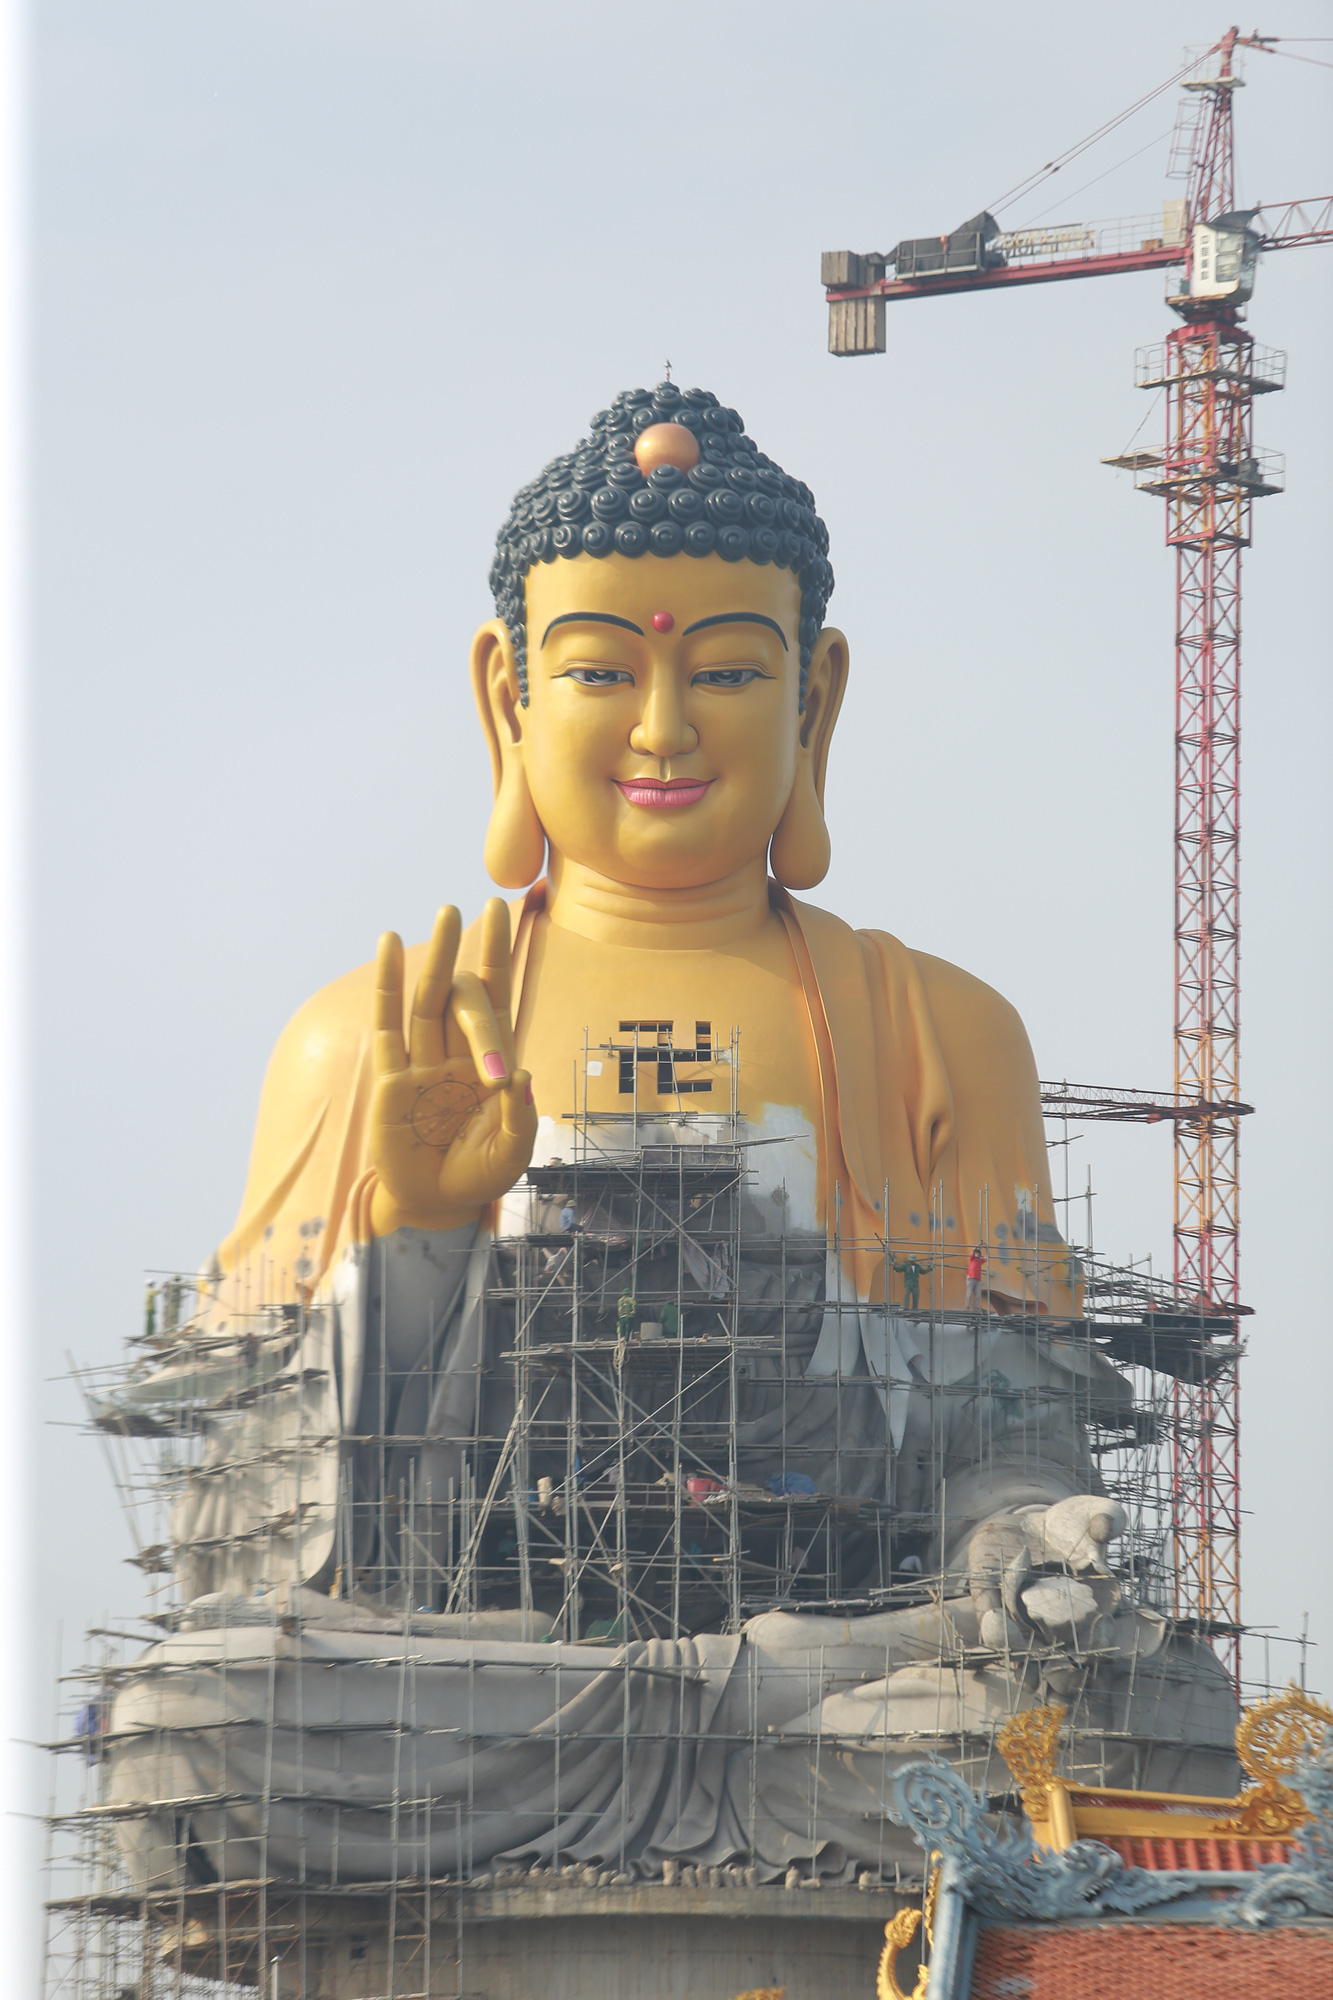 Tượng Phật A Di Đà luôn đem lại sự bình an và niềm hy vọng cho mọi người. Hãy xem hình ảnh của tượng để lấy động lực và sức mạnh để vượt qua những khó khăn trong cuộc sống.